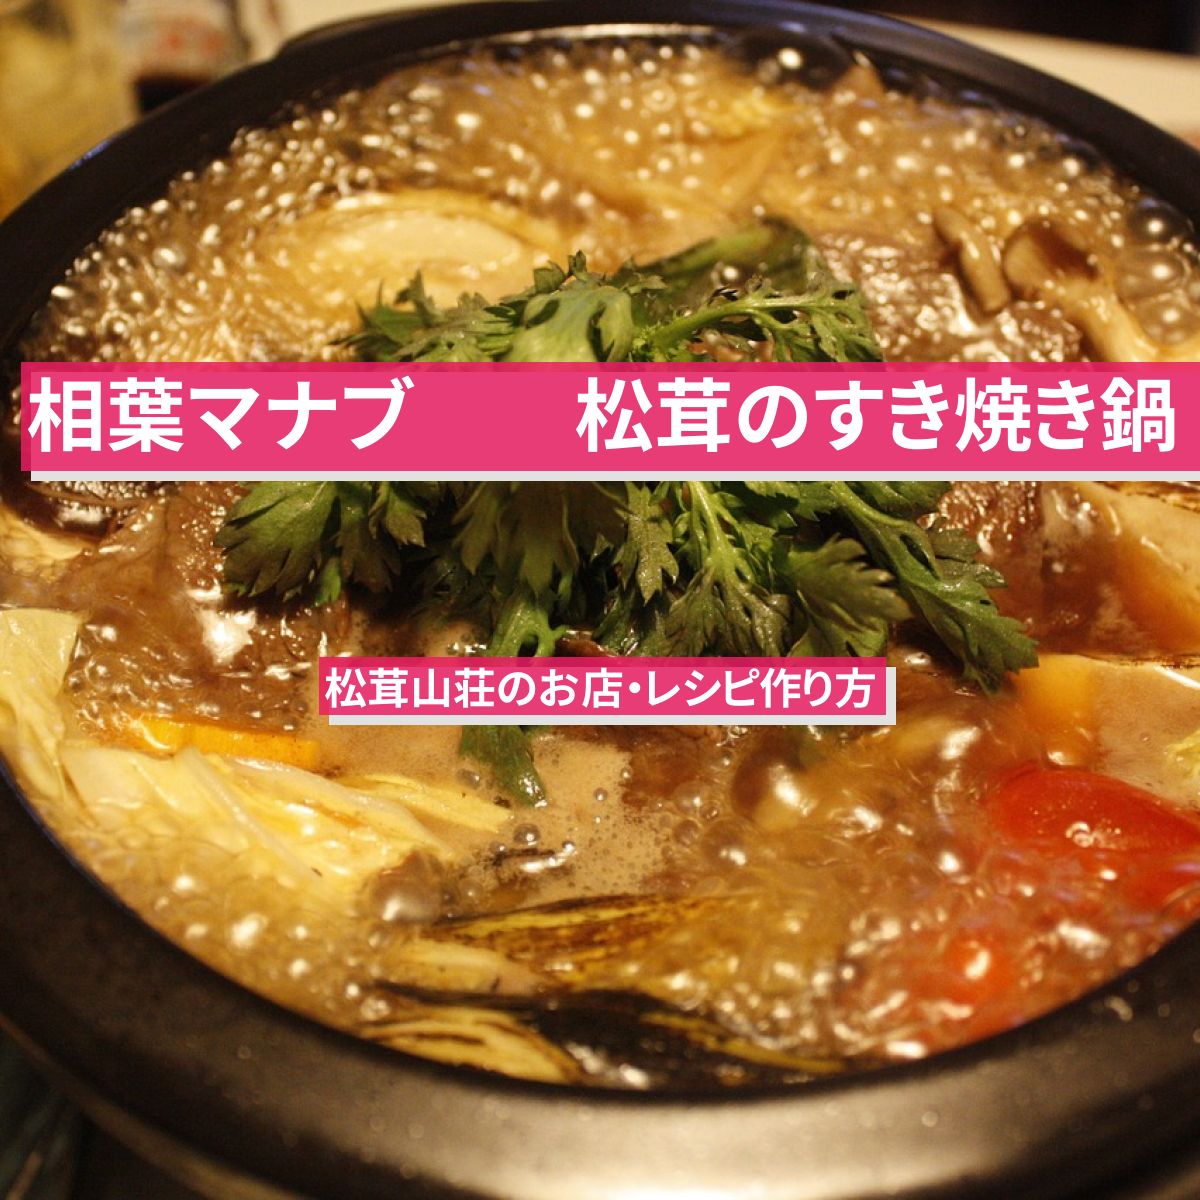 【相葉マナブ】『松茸のすき焼き鍋』松茸山荘のお店・レシピ作り方